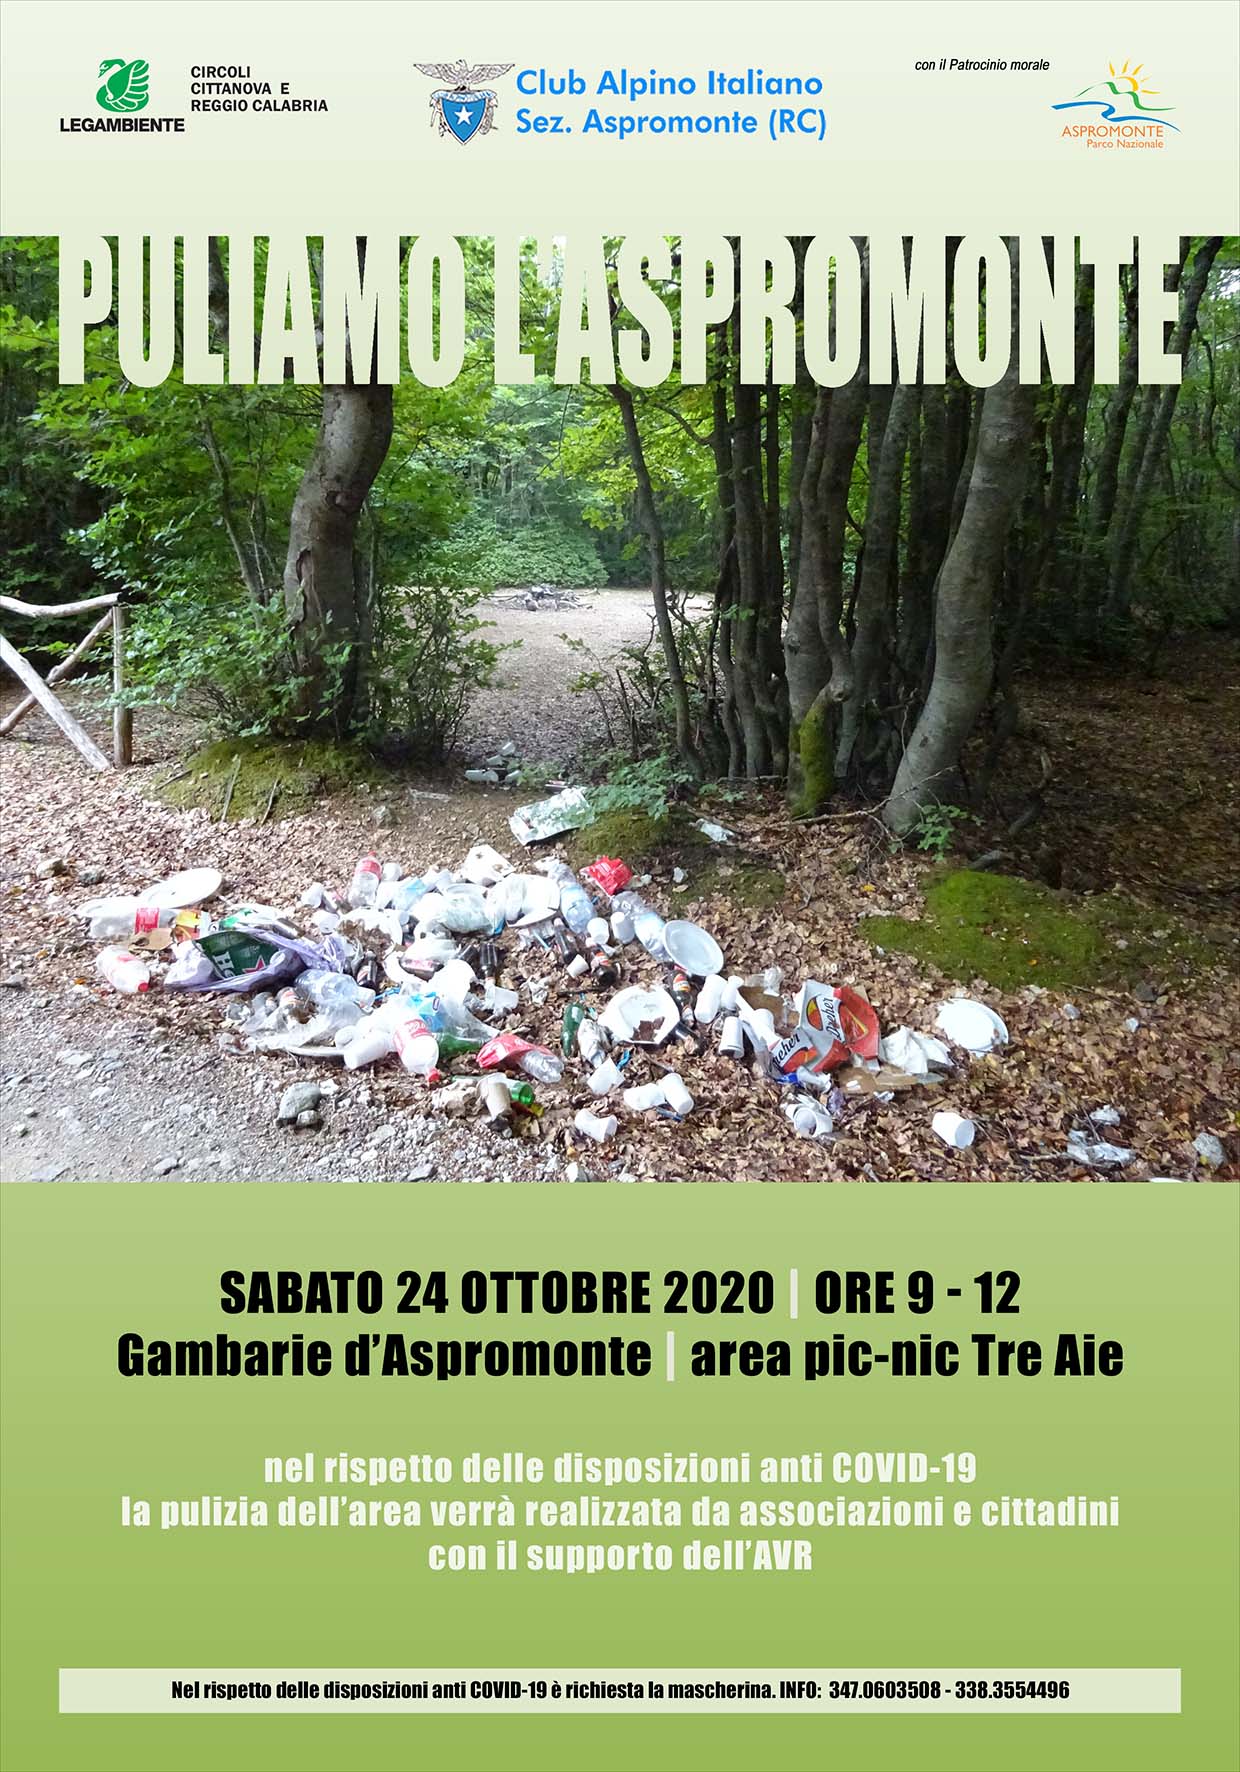 PULIAMO L'ASPROMONTE - Sabato 24 ottobre 2020